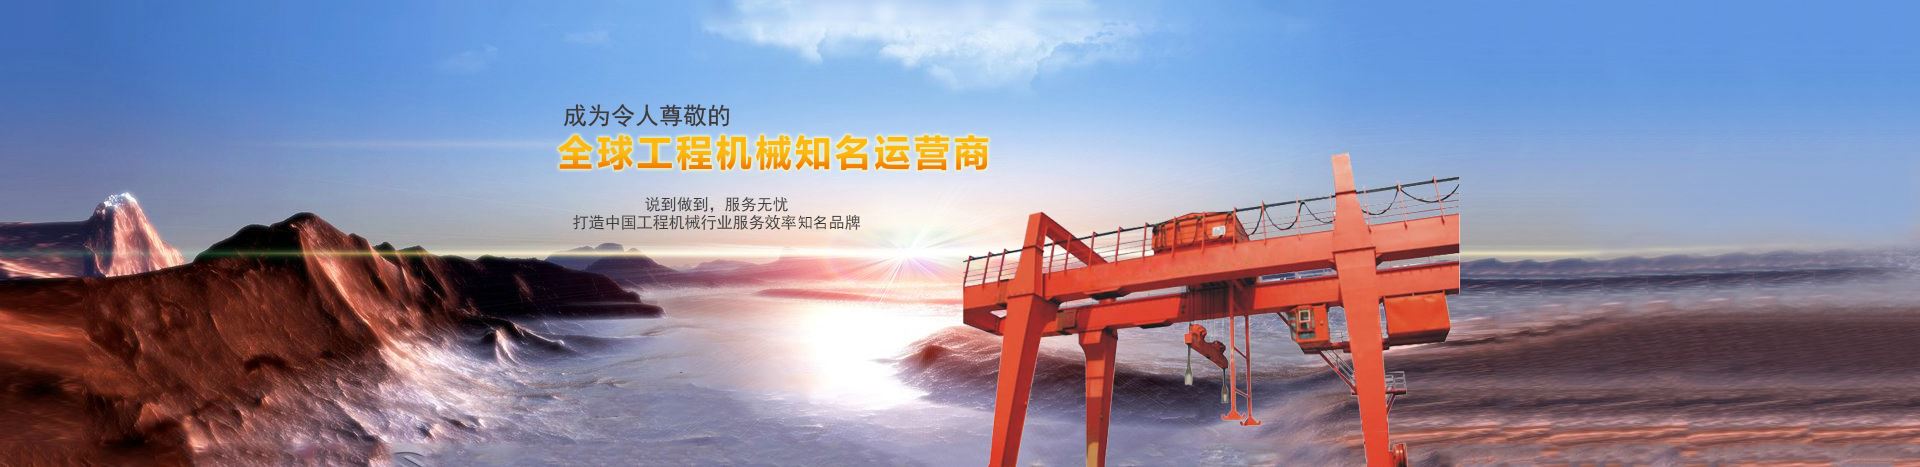 打造中国工程机械行业服务效率优质品牌